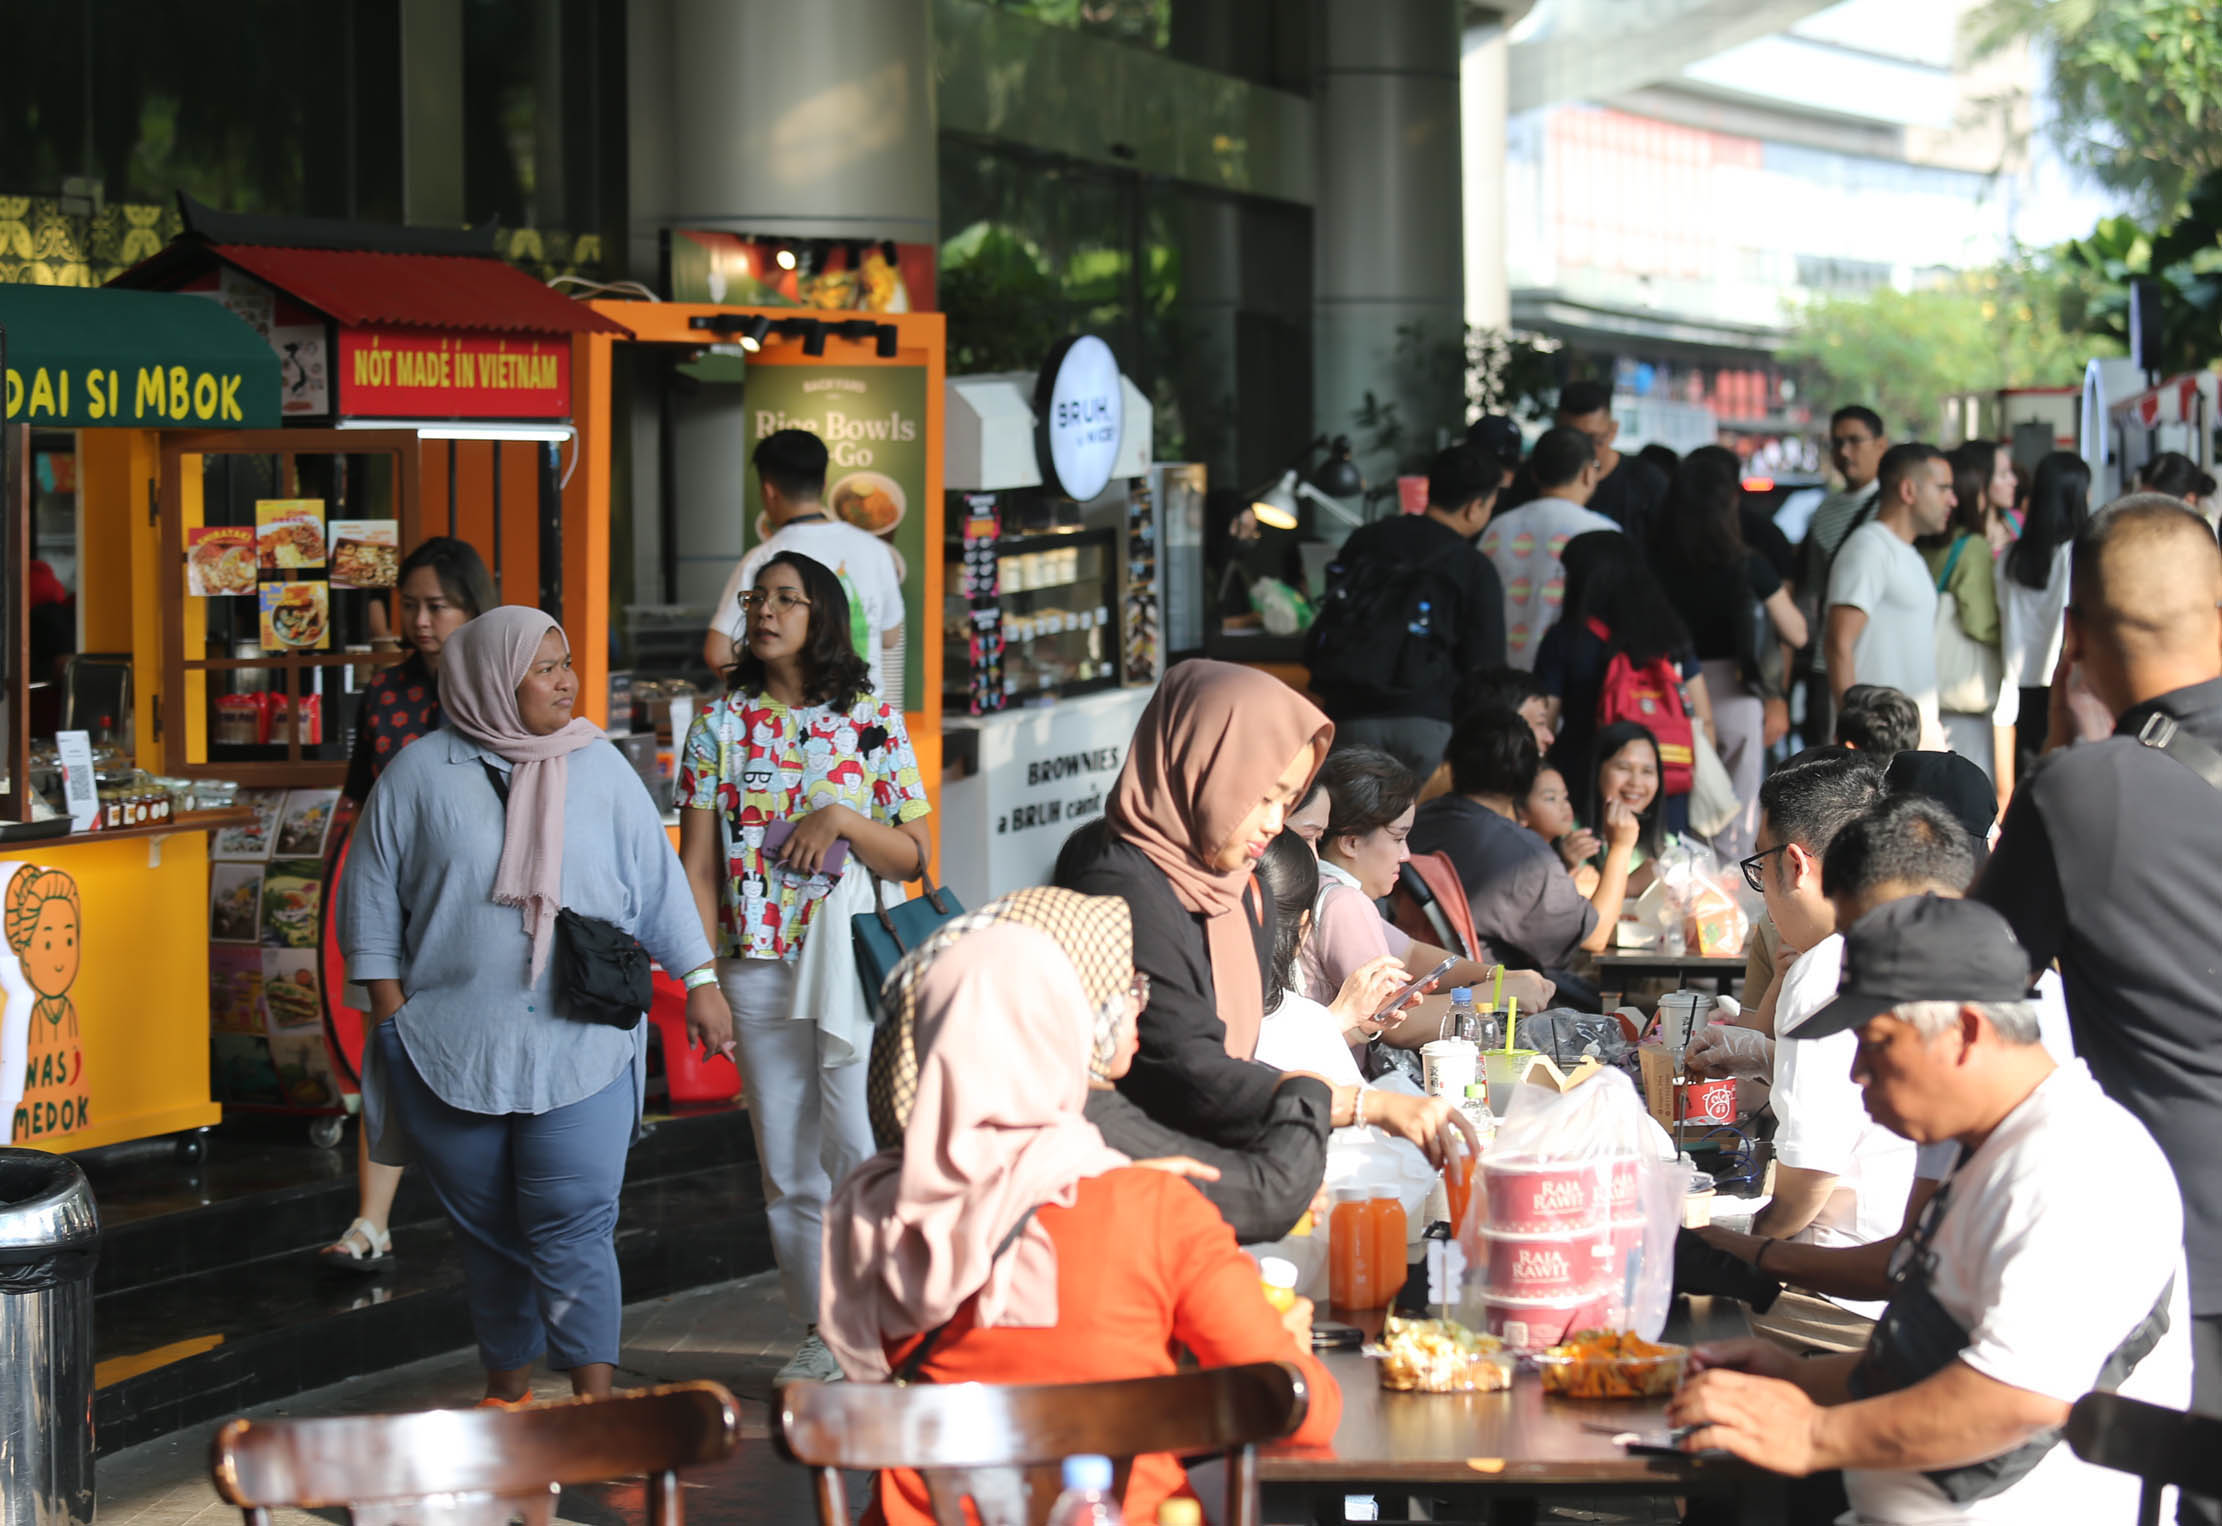 Nampak para pengunjung berkeliling stand peserta Market Museum, yg merupakan pameran UMKM dengan peserta terbanyak yang telah terselenggara sejak tahun 2013 di Lippo Malls Kemang. Foto : Panji Asmoro/TrenAsia